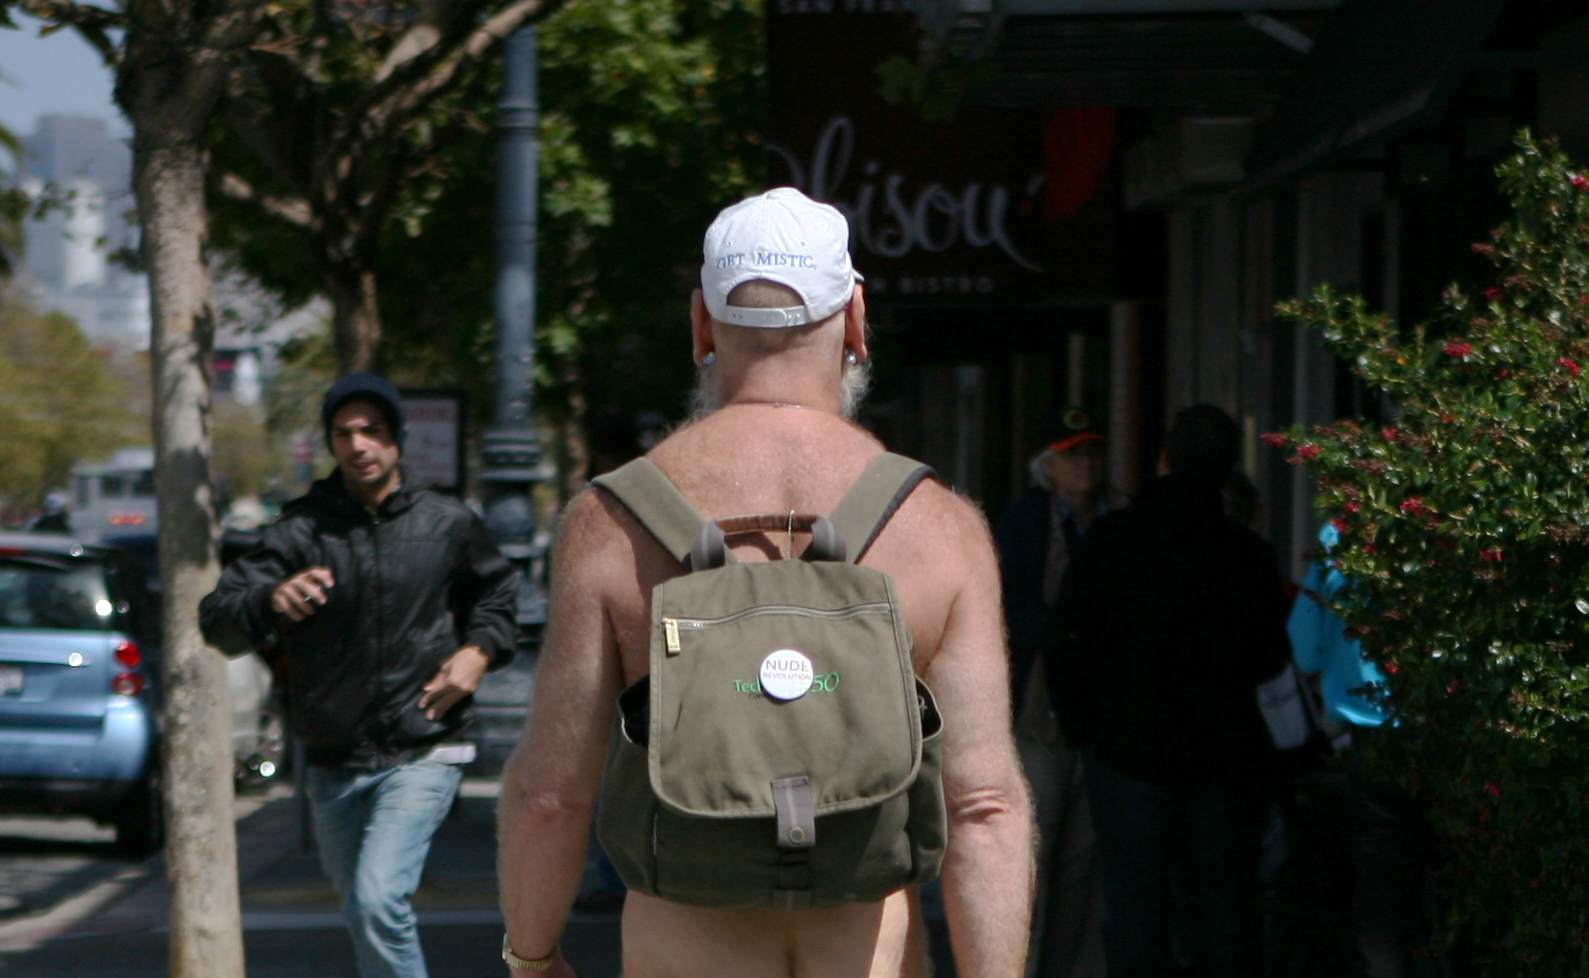 San Francisco : Les nudistes vont-ils devoir se rhabiller ?